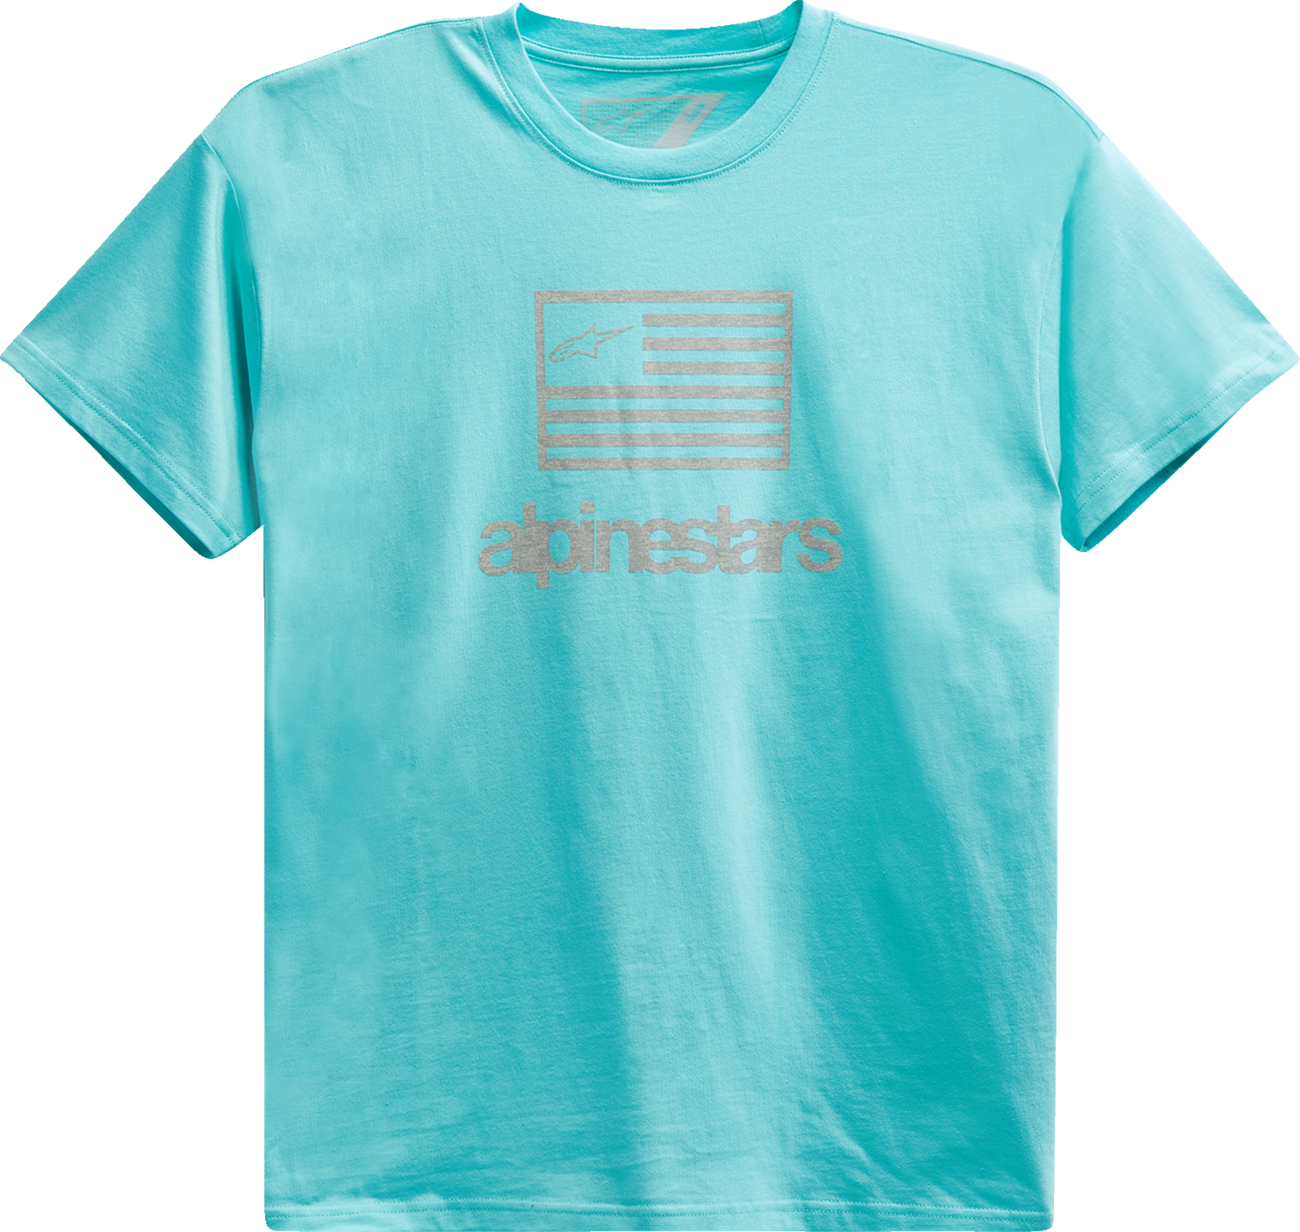 Camiseta con bandera de ALPINESTARS - Aqua claro - Mediana 1213726207206M